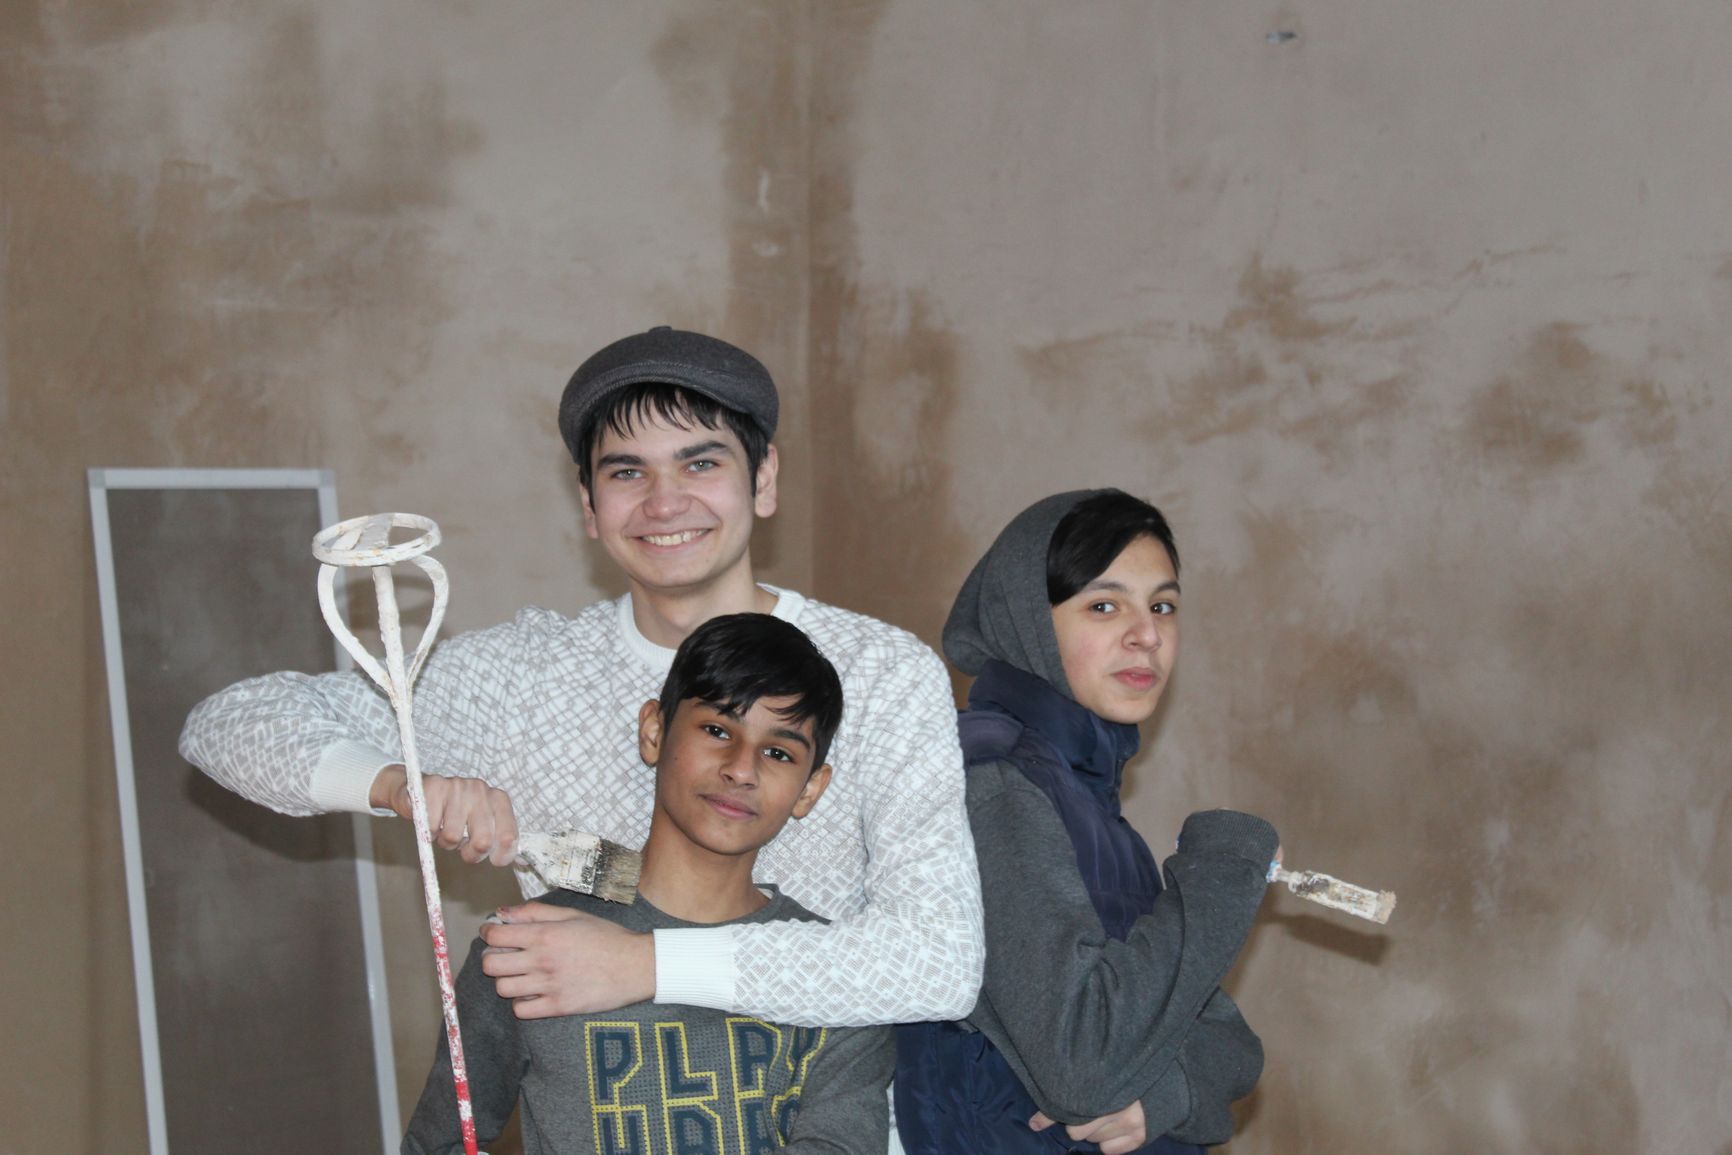 Ремонт в Центре ромская молодежь делала своими силами